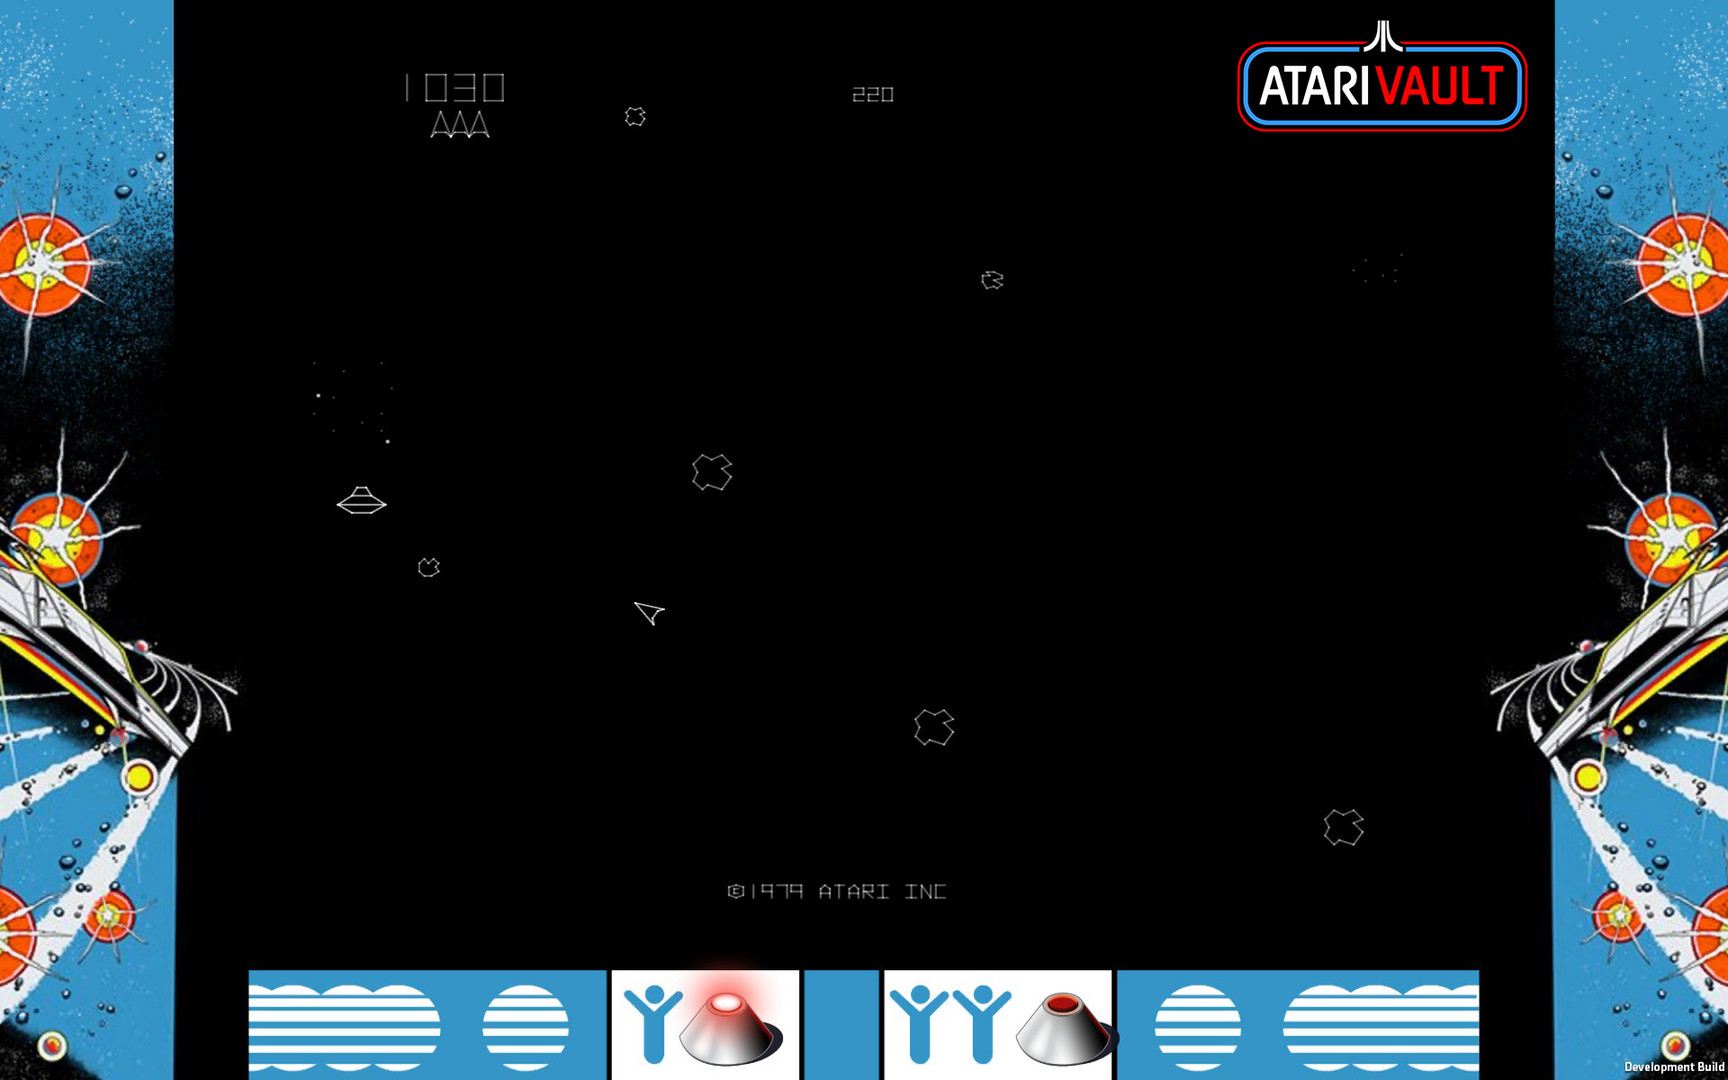 Asteroids Atari Vault